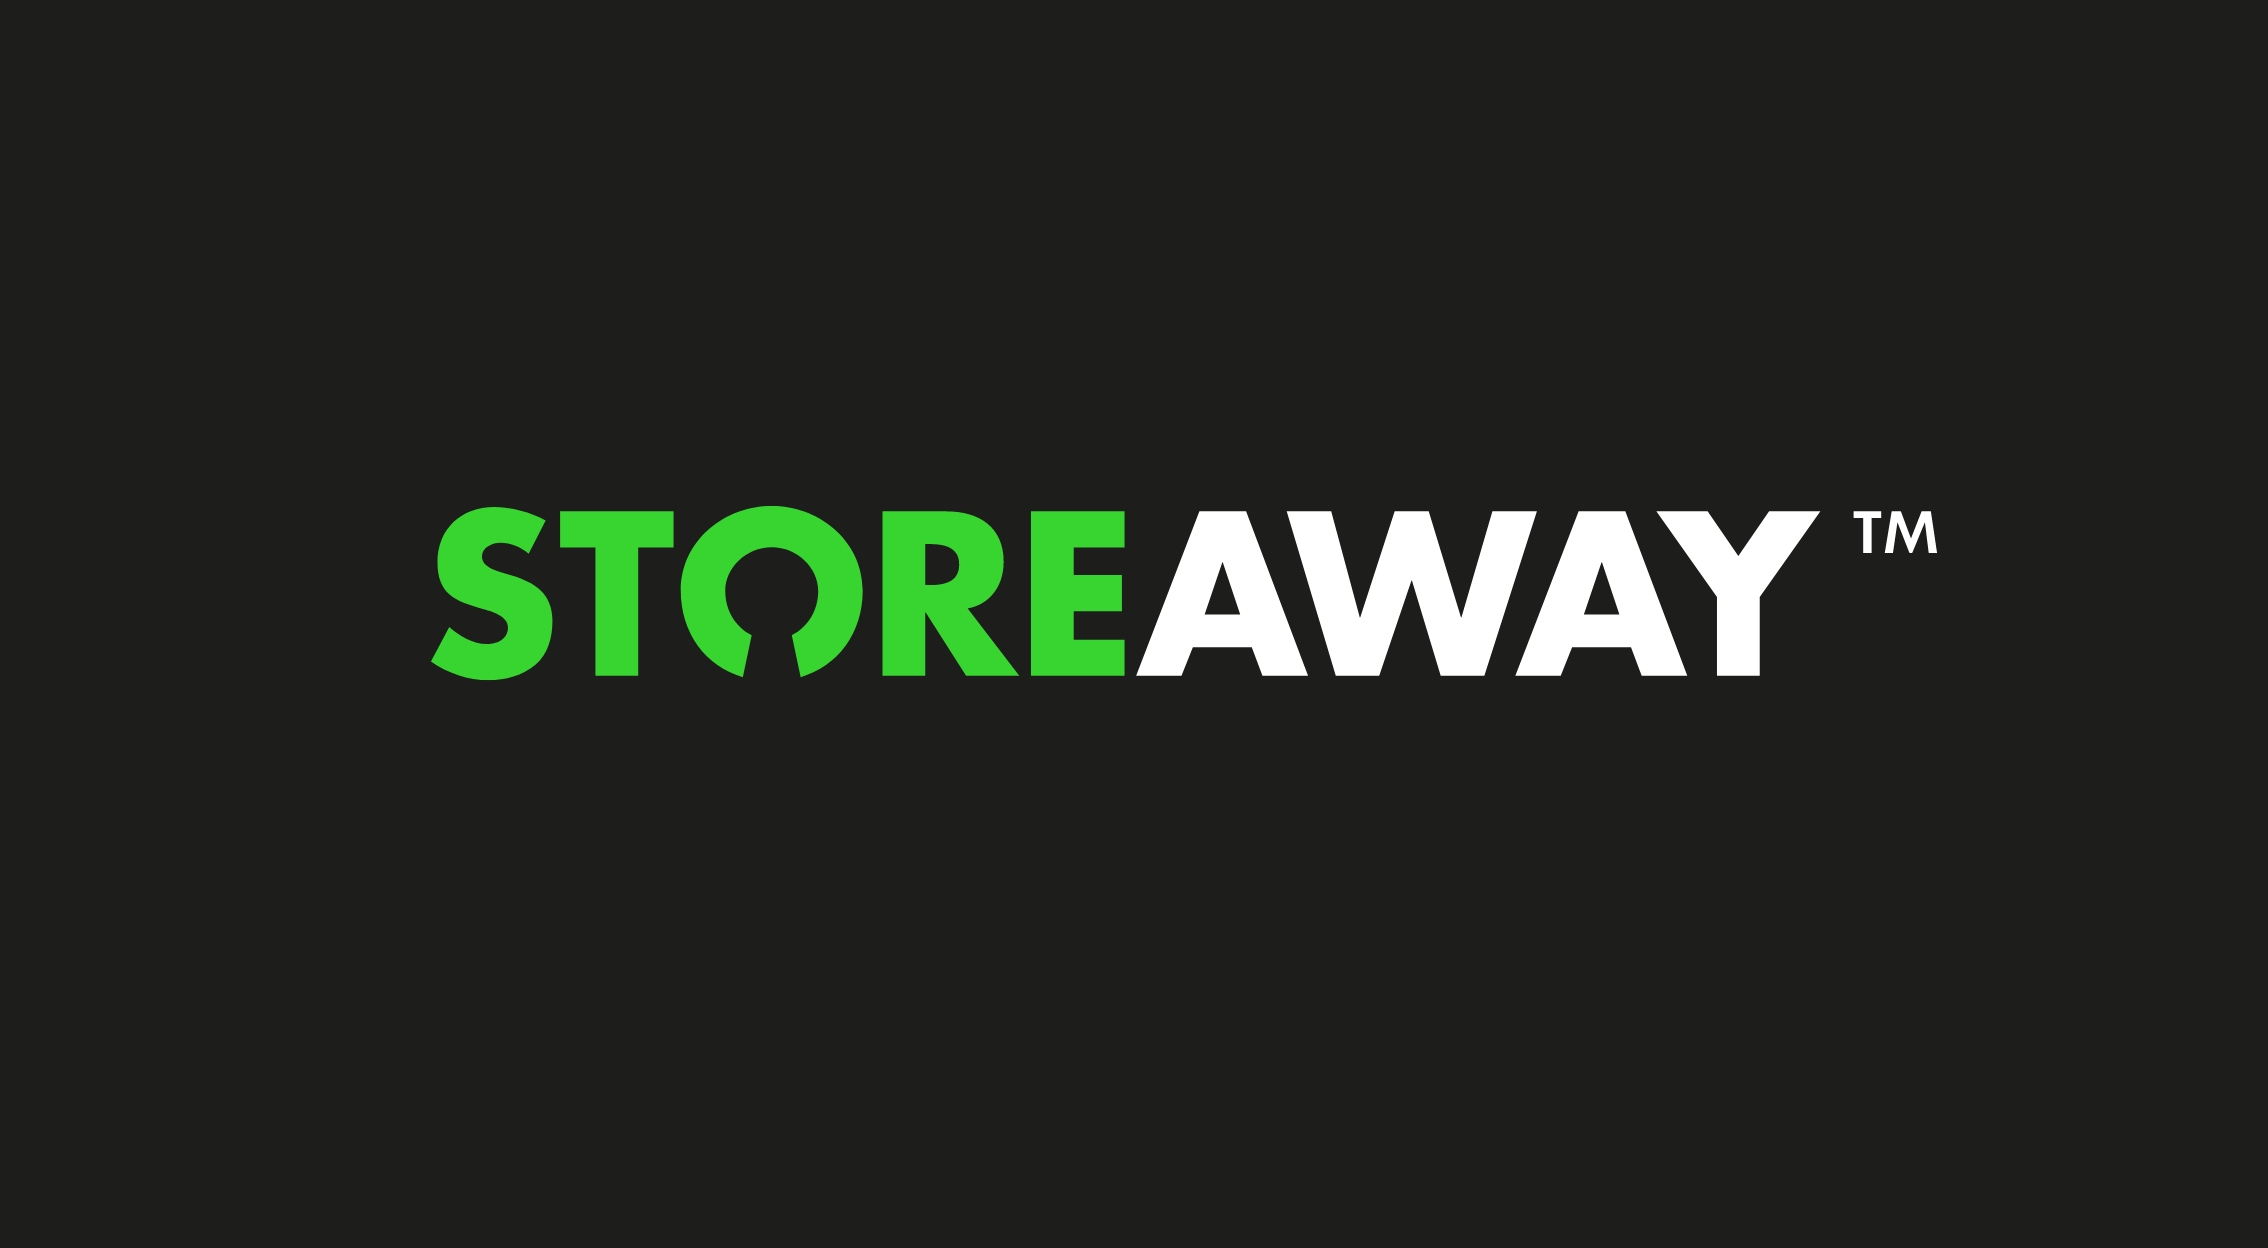 storeaway logo